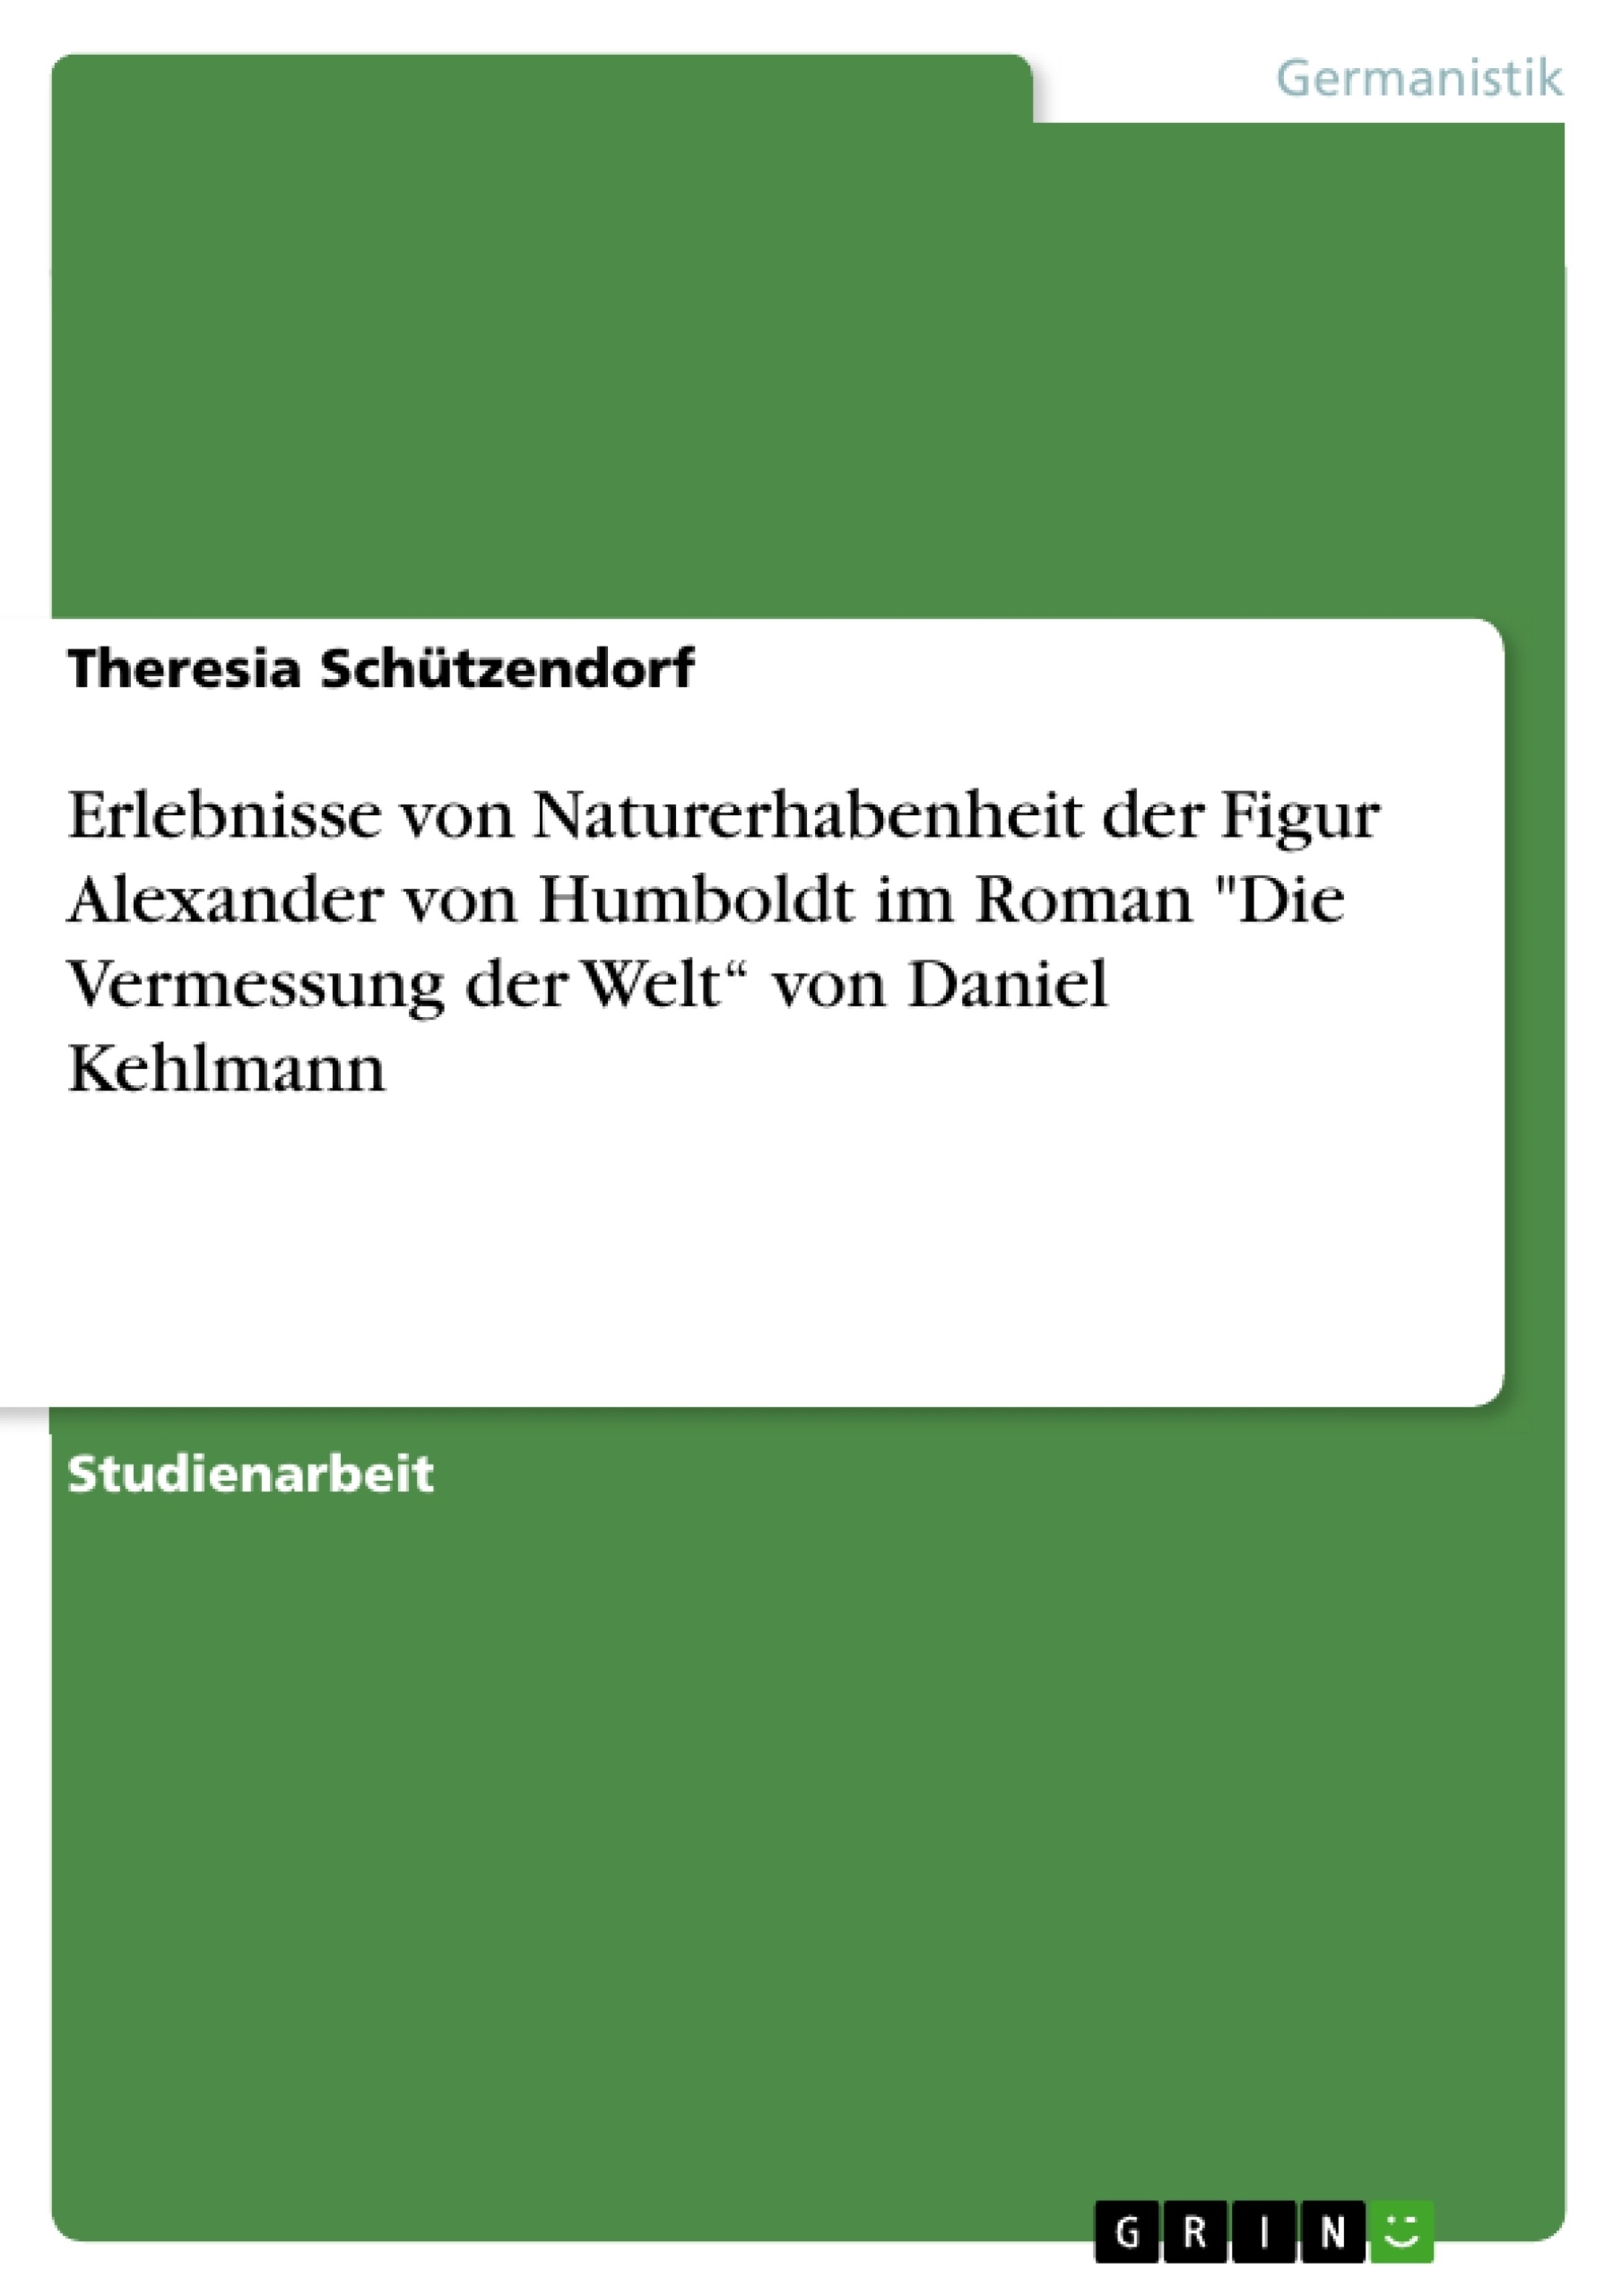 Título: Erlebnisse von Naturerhabenheit der Figur Alexander von Humboldt im Roman "Die Vermessung der Welt“ von Daniel Kehlmann